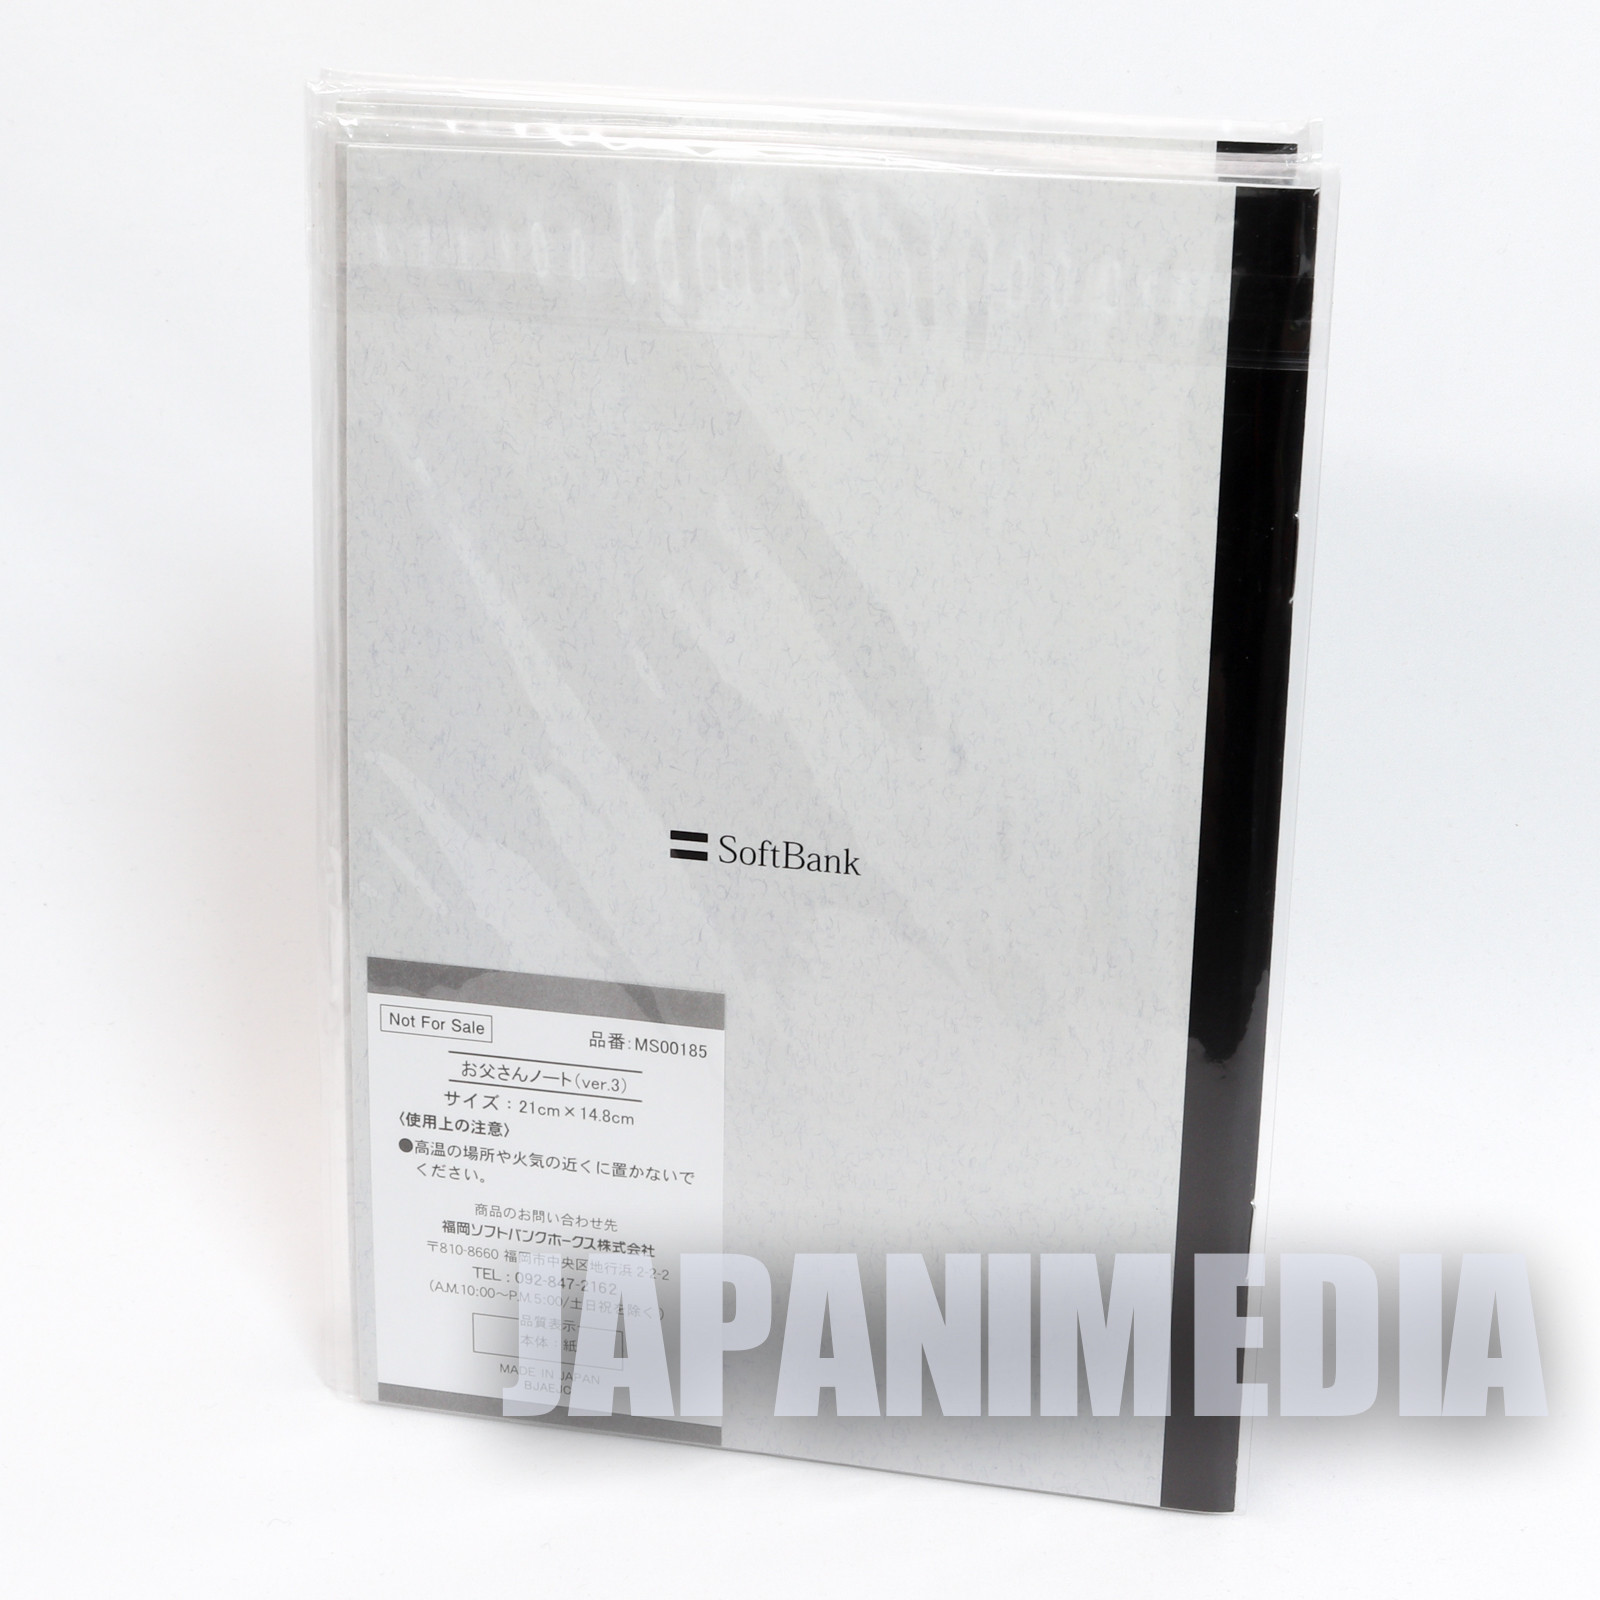 Soft Bank White Dog Novelty set Notebook / Eraser / Memo Pad